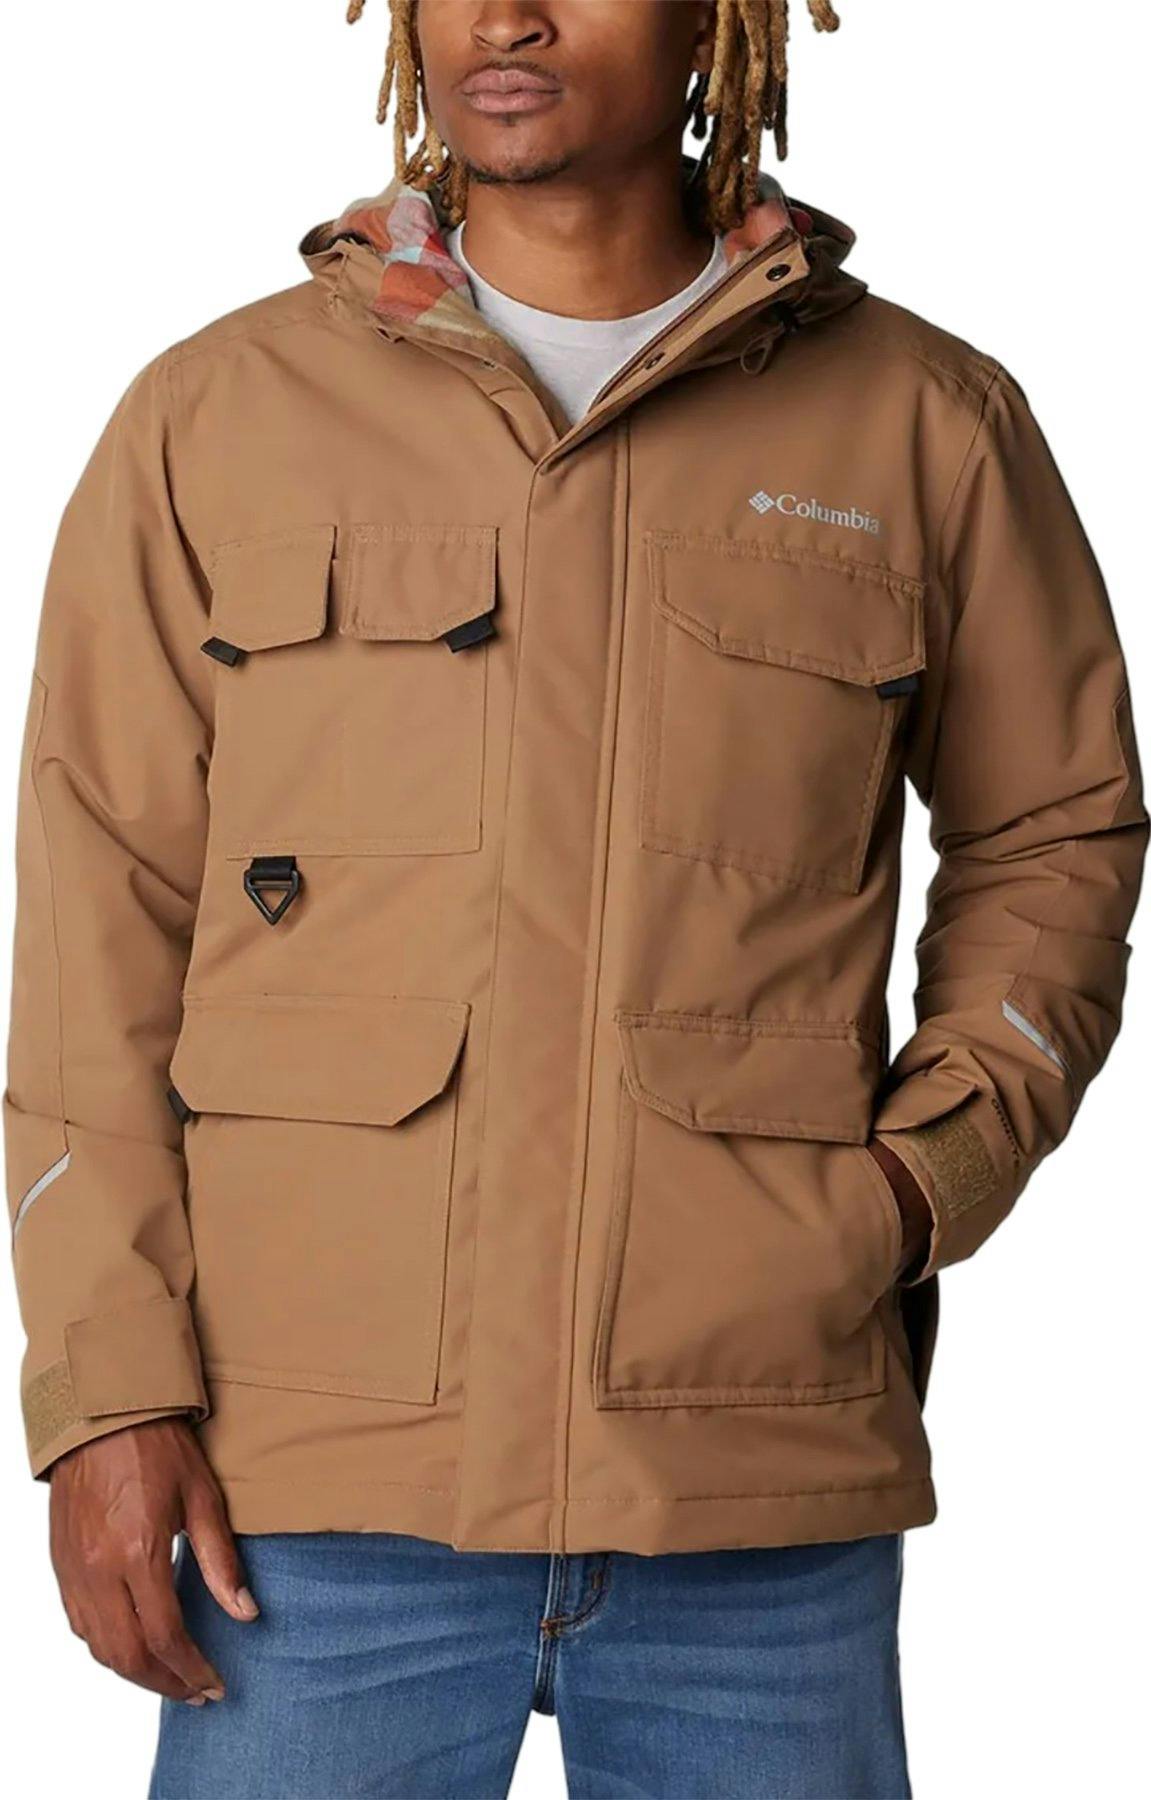 Product image for Landroamer Lined Jacket - Men's